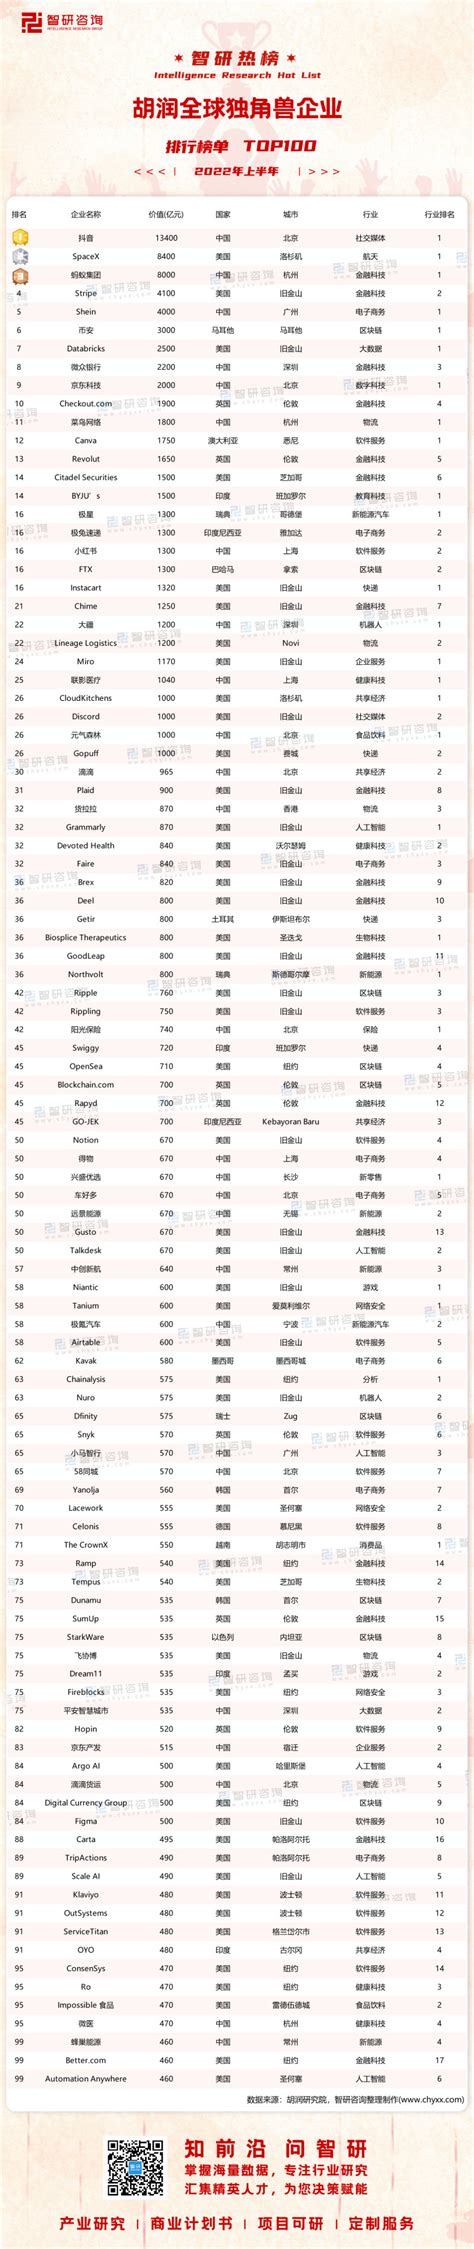 2022年中国独角兽企业市场现状及竞争格局分析 2021年我国共有301家企业上榜【组图】 - 知乎